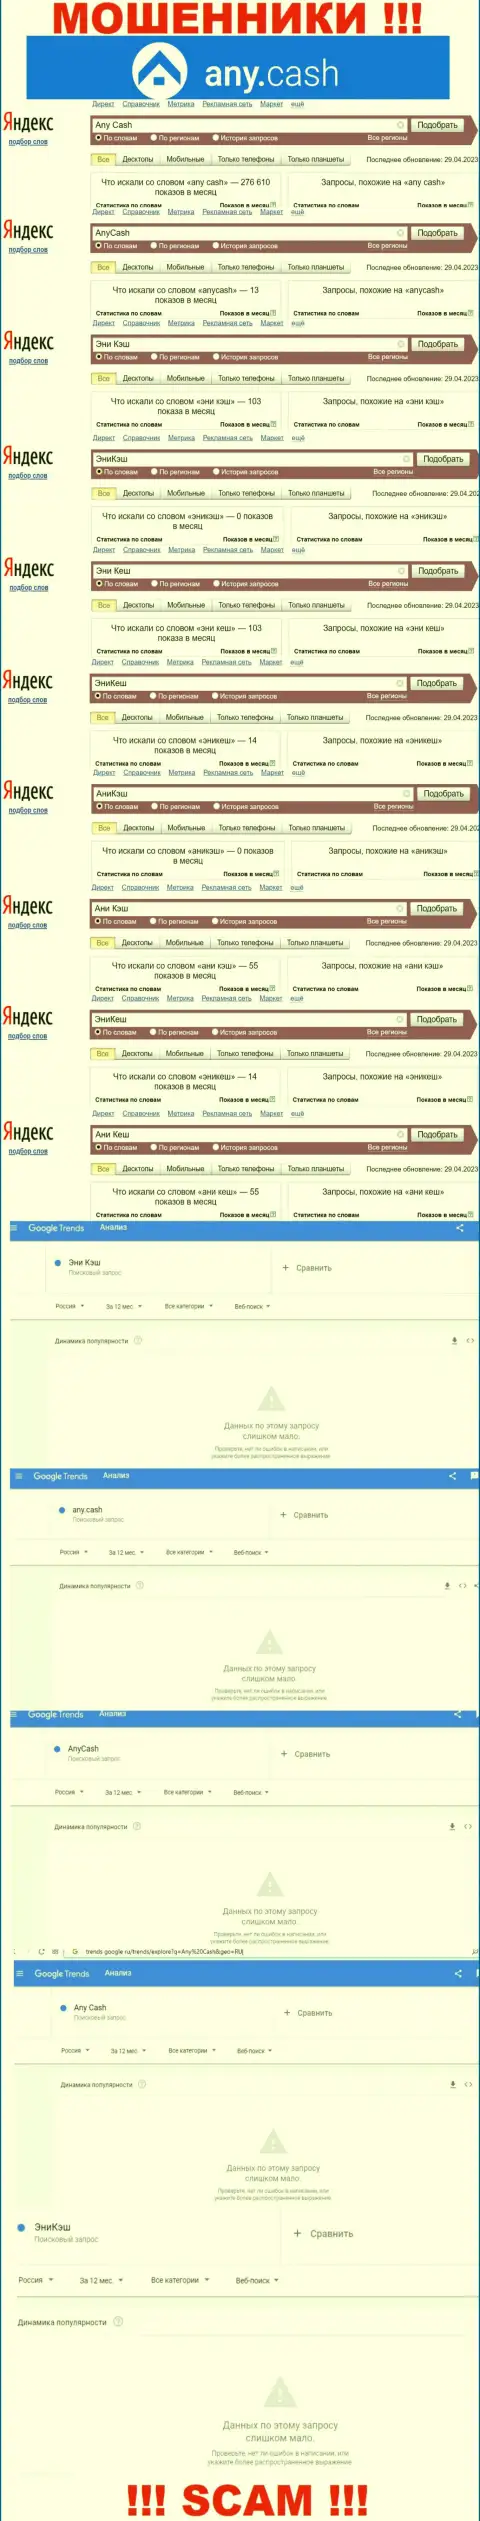 Скриншот итога онлайн запросов по противозаконно действующей компании АниКеш